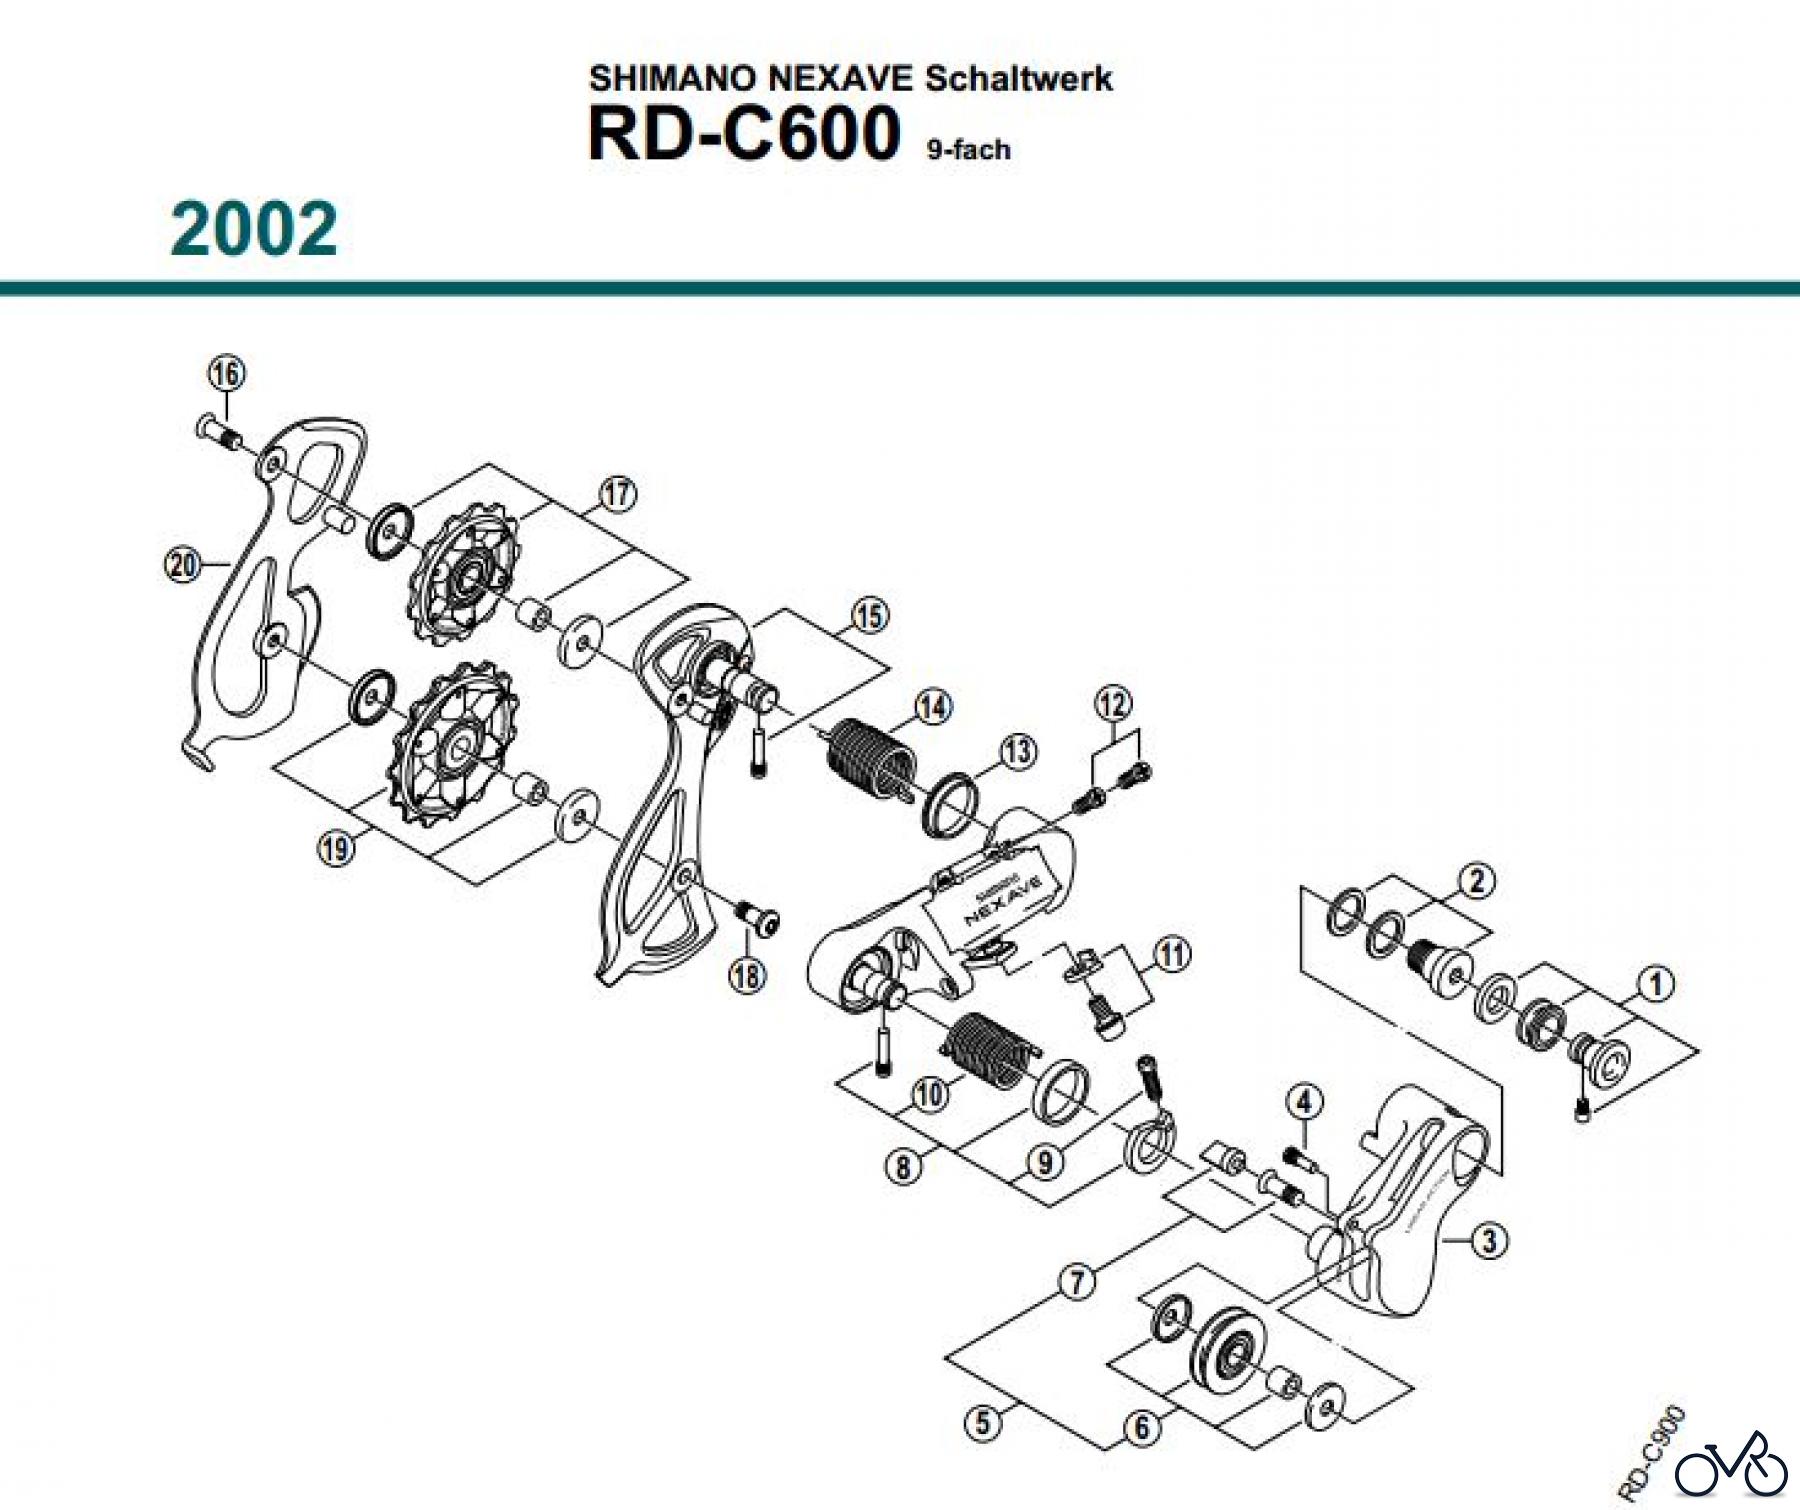  Shimano RD Rear Derailleur - Schaltwerk RD-C600-02